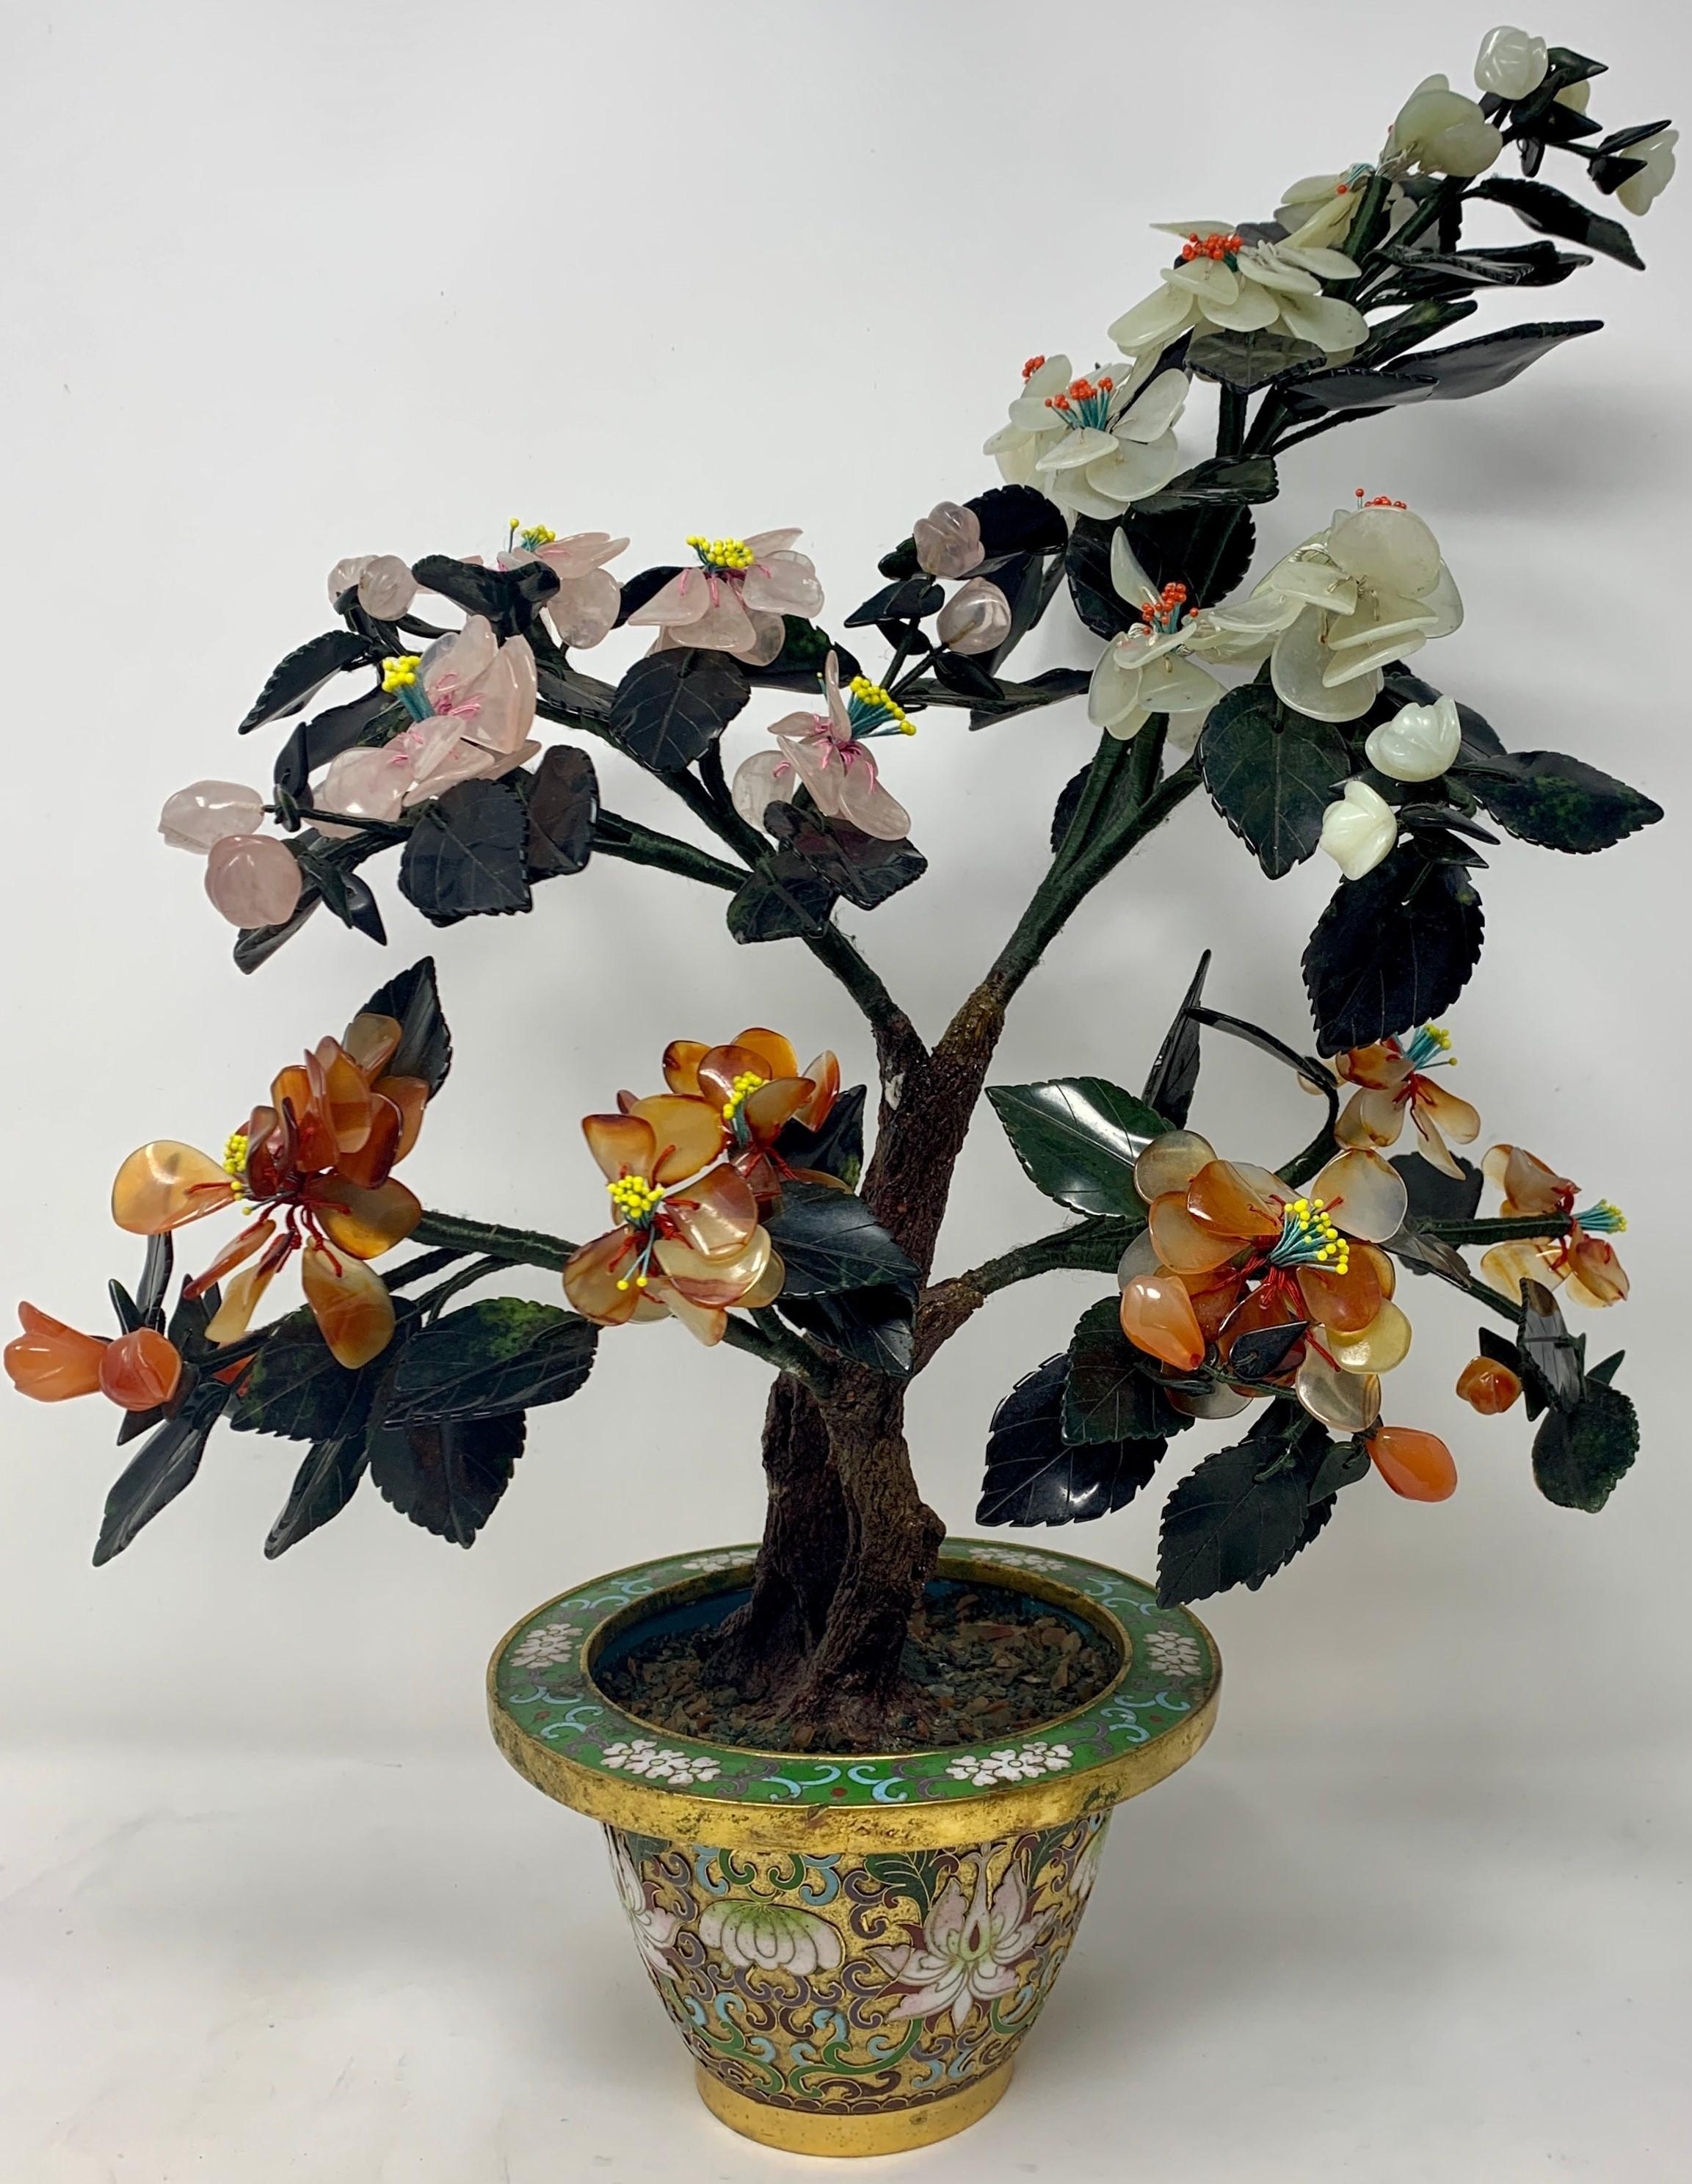 Antique Chinese hand-stone cloisonné florals
MISC406.